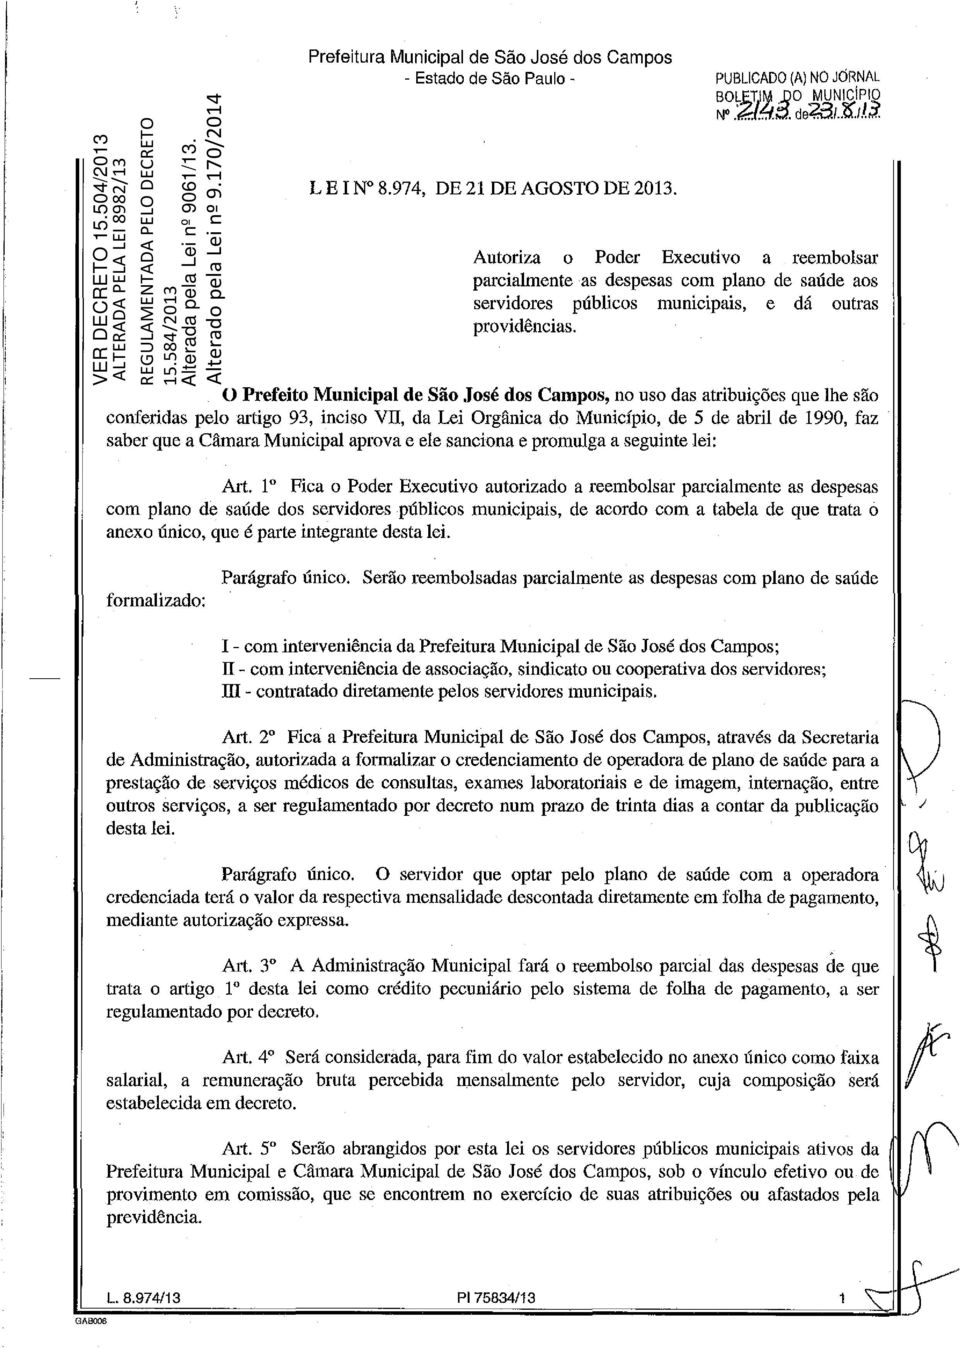 O Prefeito Municipal de São José dos Campos, no uso das atribuições que lhe são conferidas pelo artigo 93, inciso VII, da Lei Orgânica do Município, de 5 de abril de 1990, faz saber que a Câmara